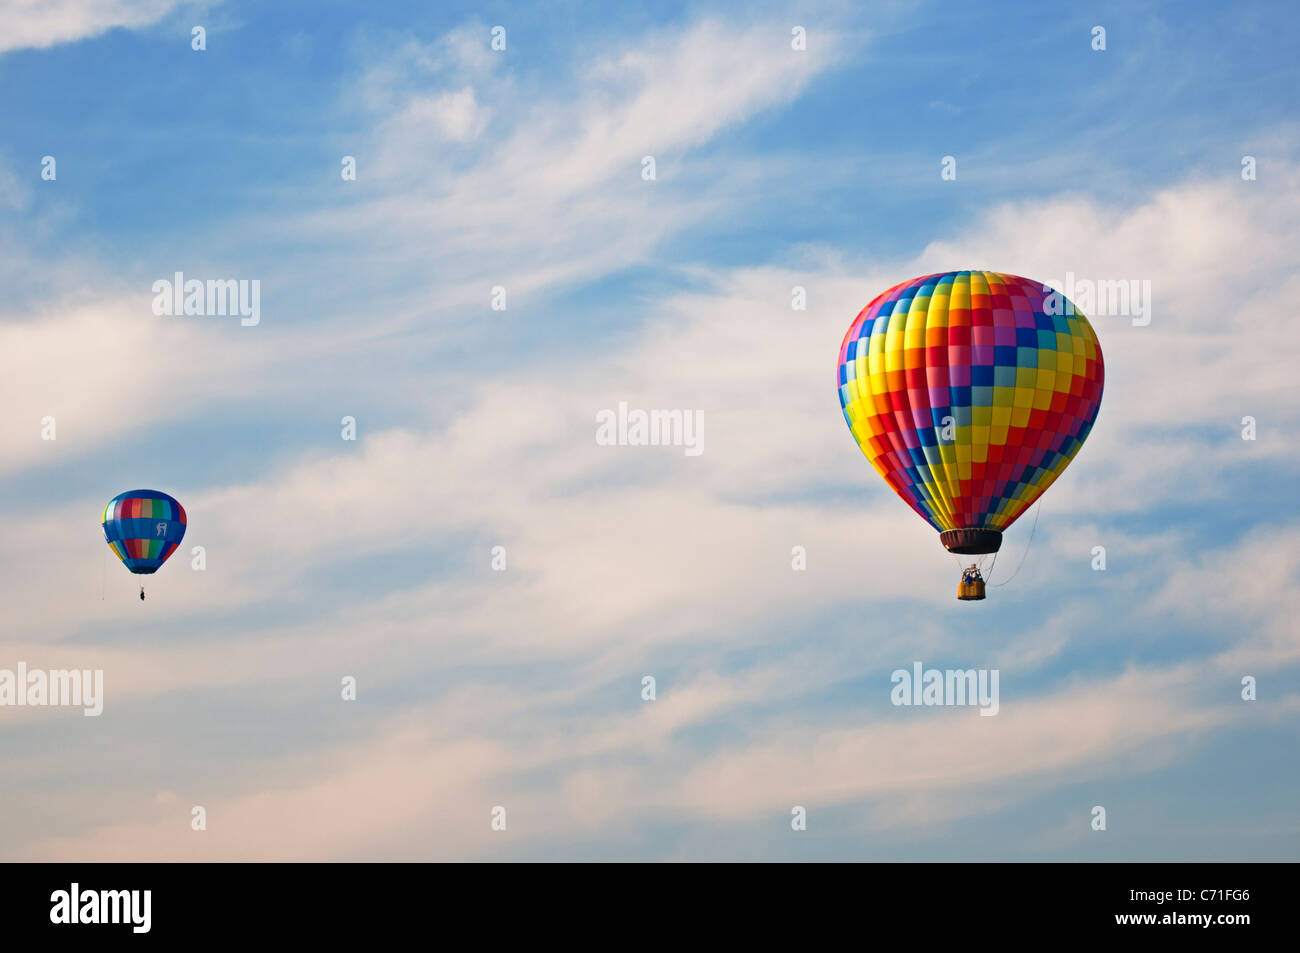 Ein Heißluftballon-Festival in Bealeton, Virginia / zwei Heißluftballons fliegen mit einem verschwommenen blauen Himmelshintergrund Stockfoto